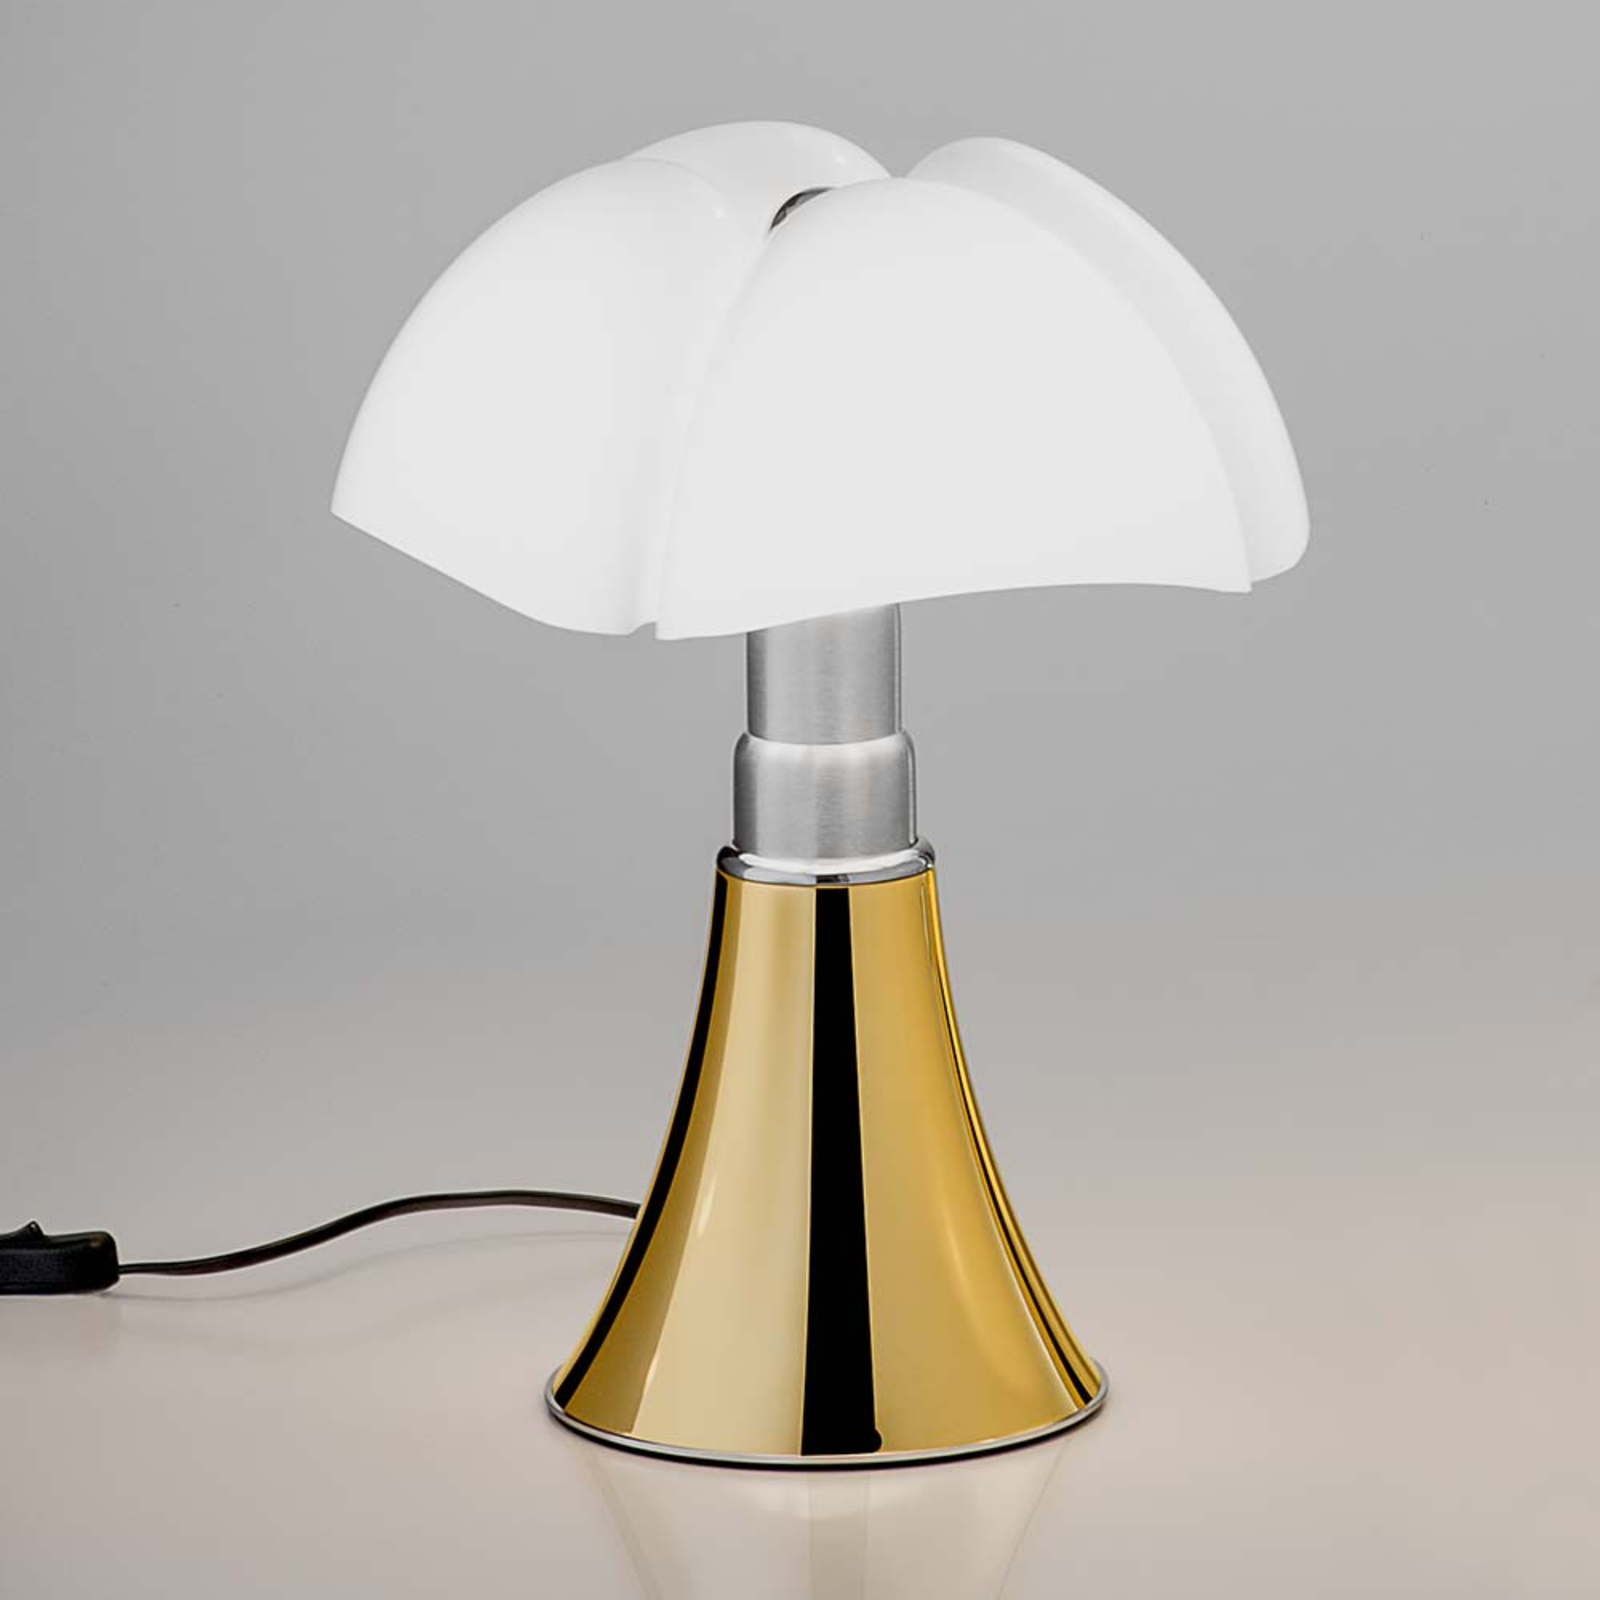 Martinelli Luce Minipipistrello table lamp gold